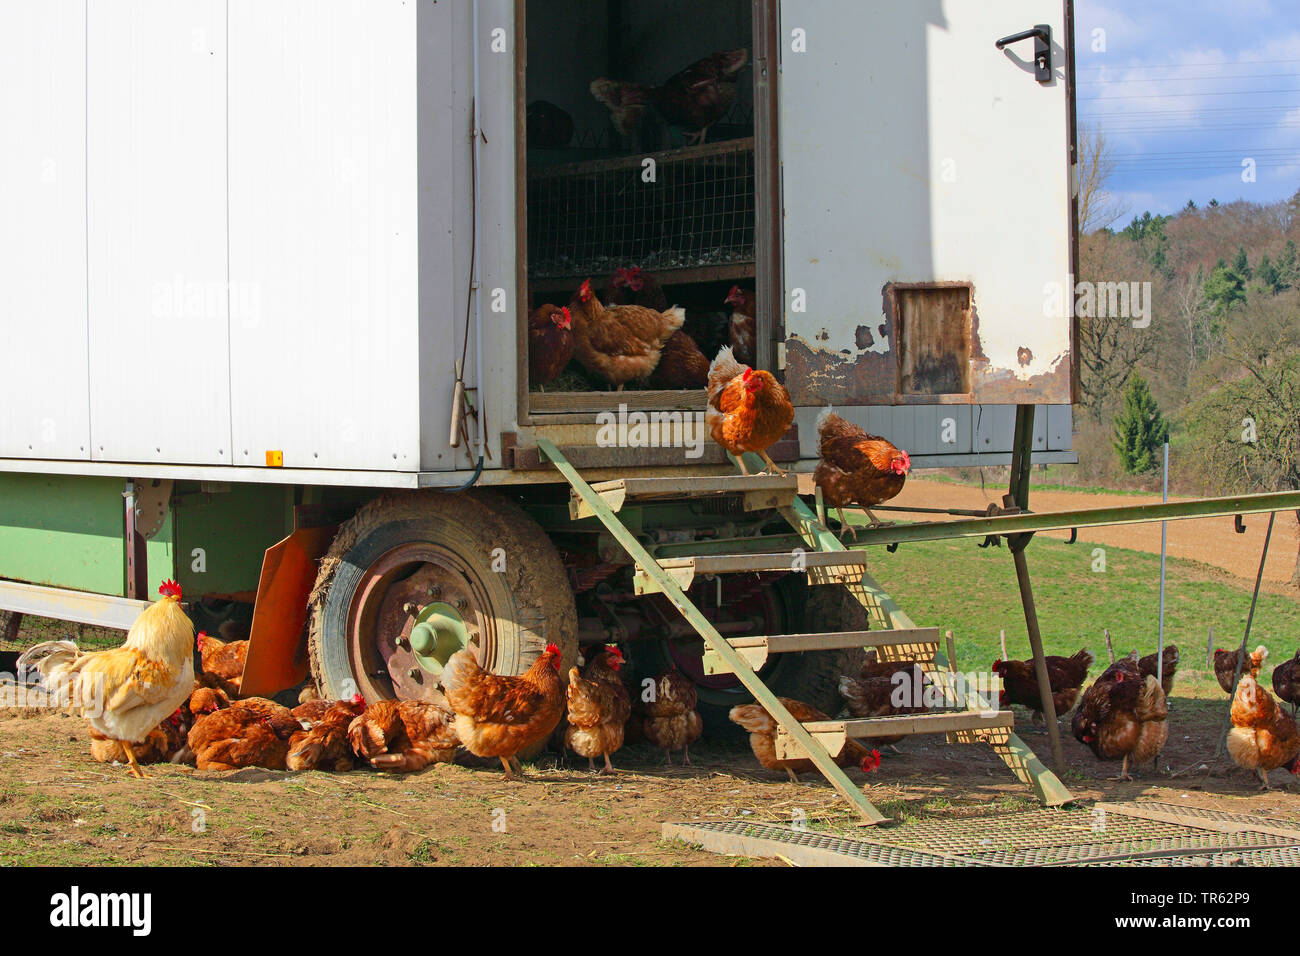 Las gallinas (Gallus gallus f. domestica), pollos de granja y gallinero móvil, Alemania, Hesse. Foto de stock